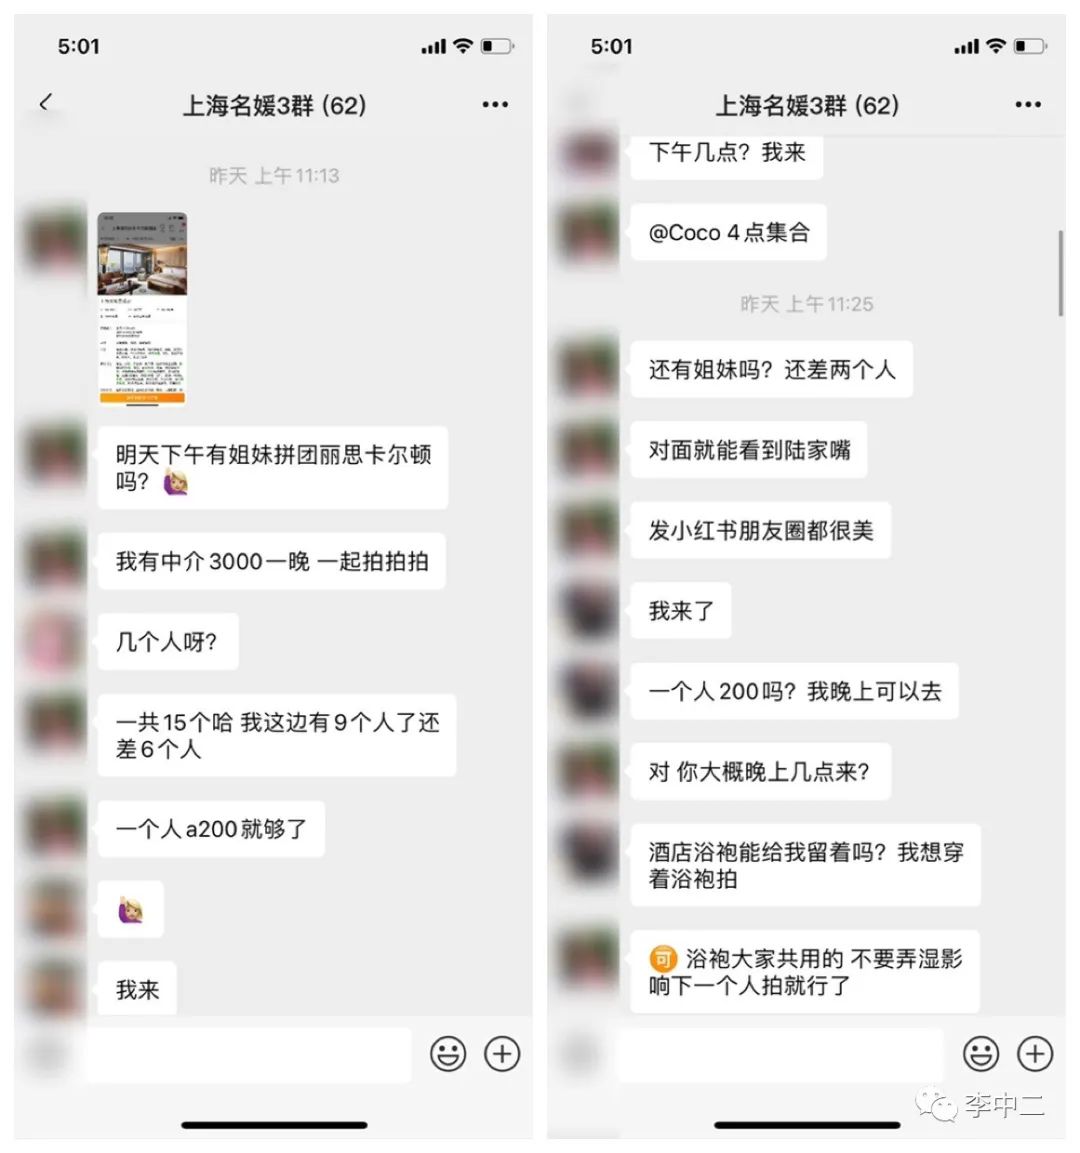 “名媛拼夕夕”：社交媒体时代还有真实可言吗？